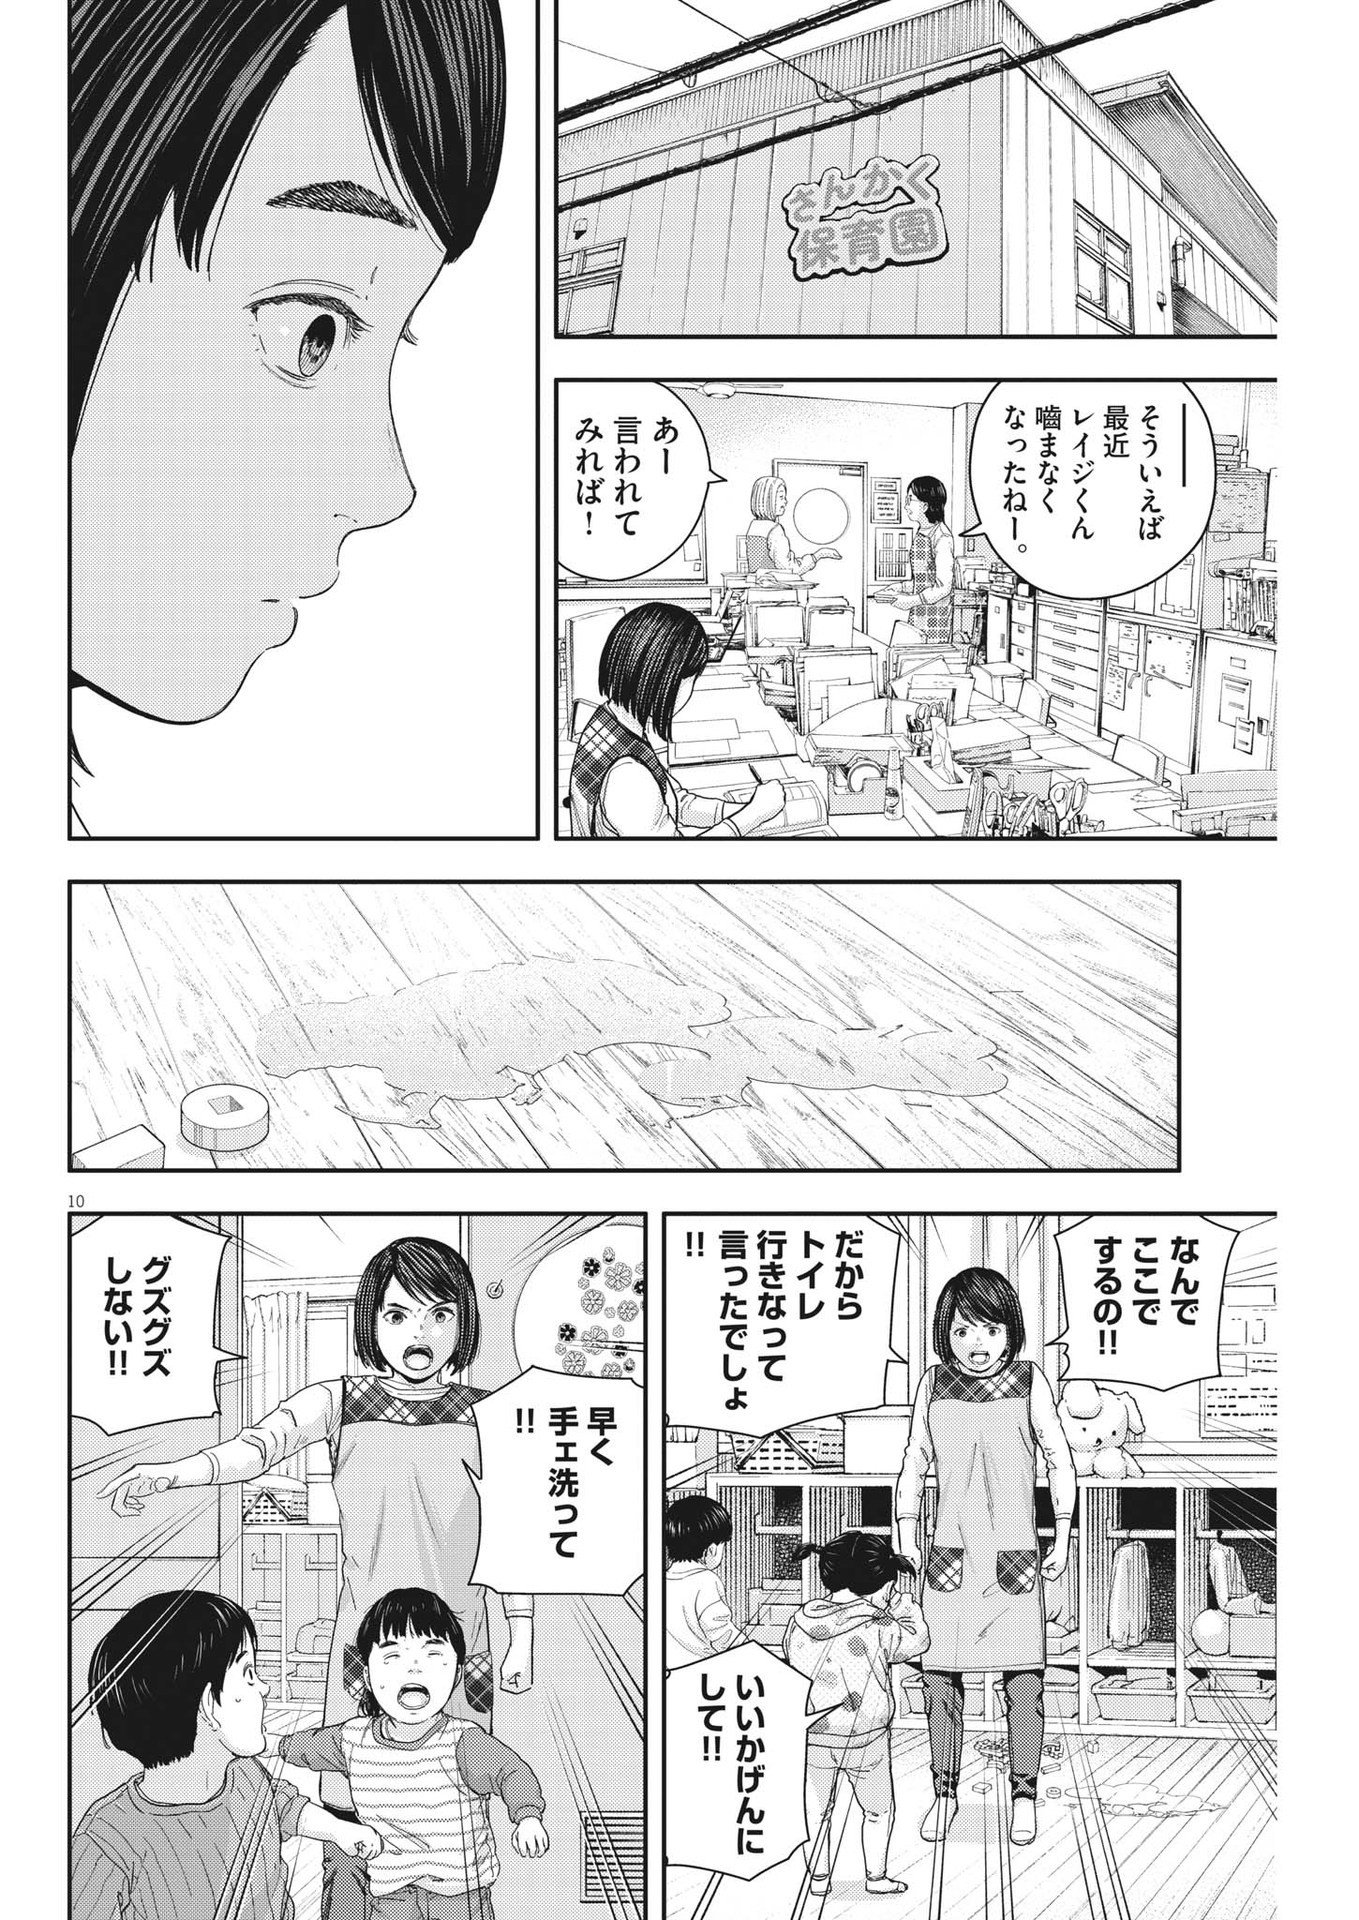 Yumenashi-sensei no Shinroshidou - Chapter 23 - Page 10